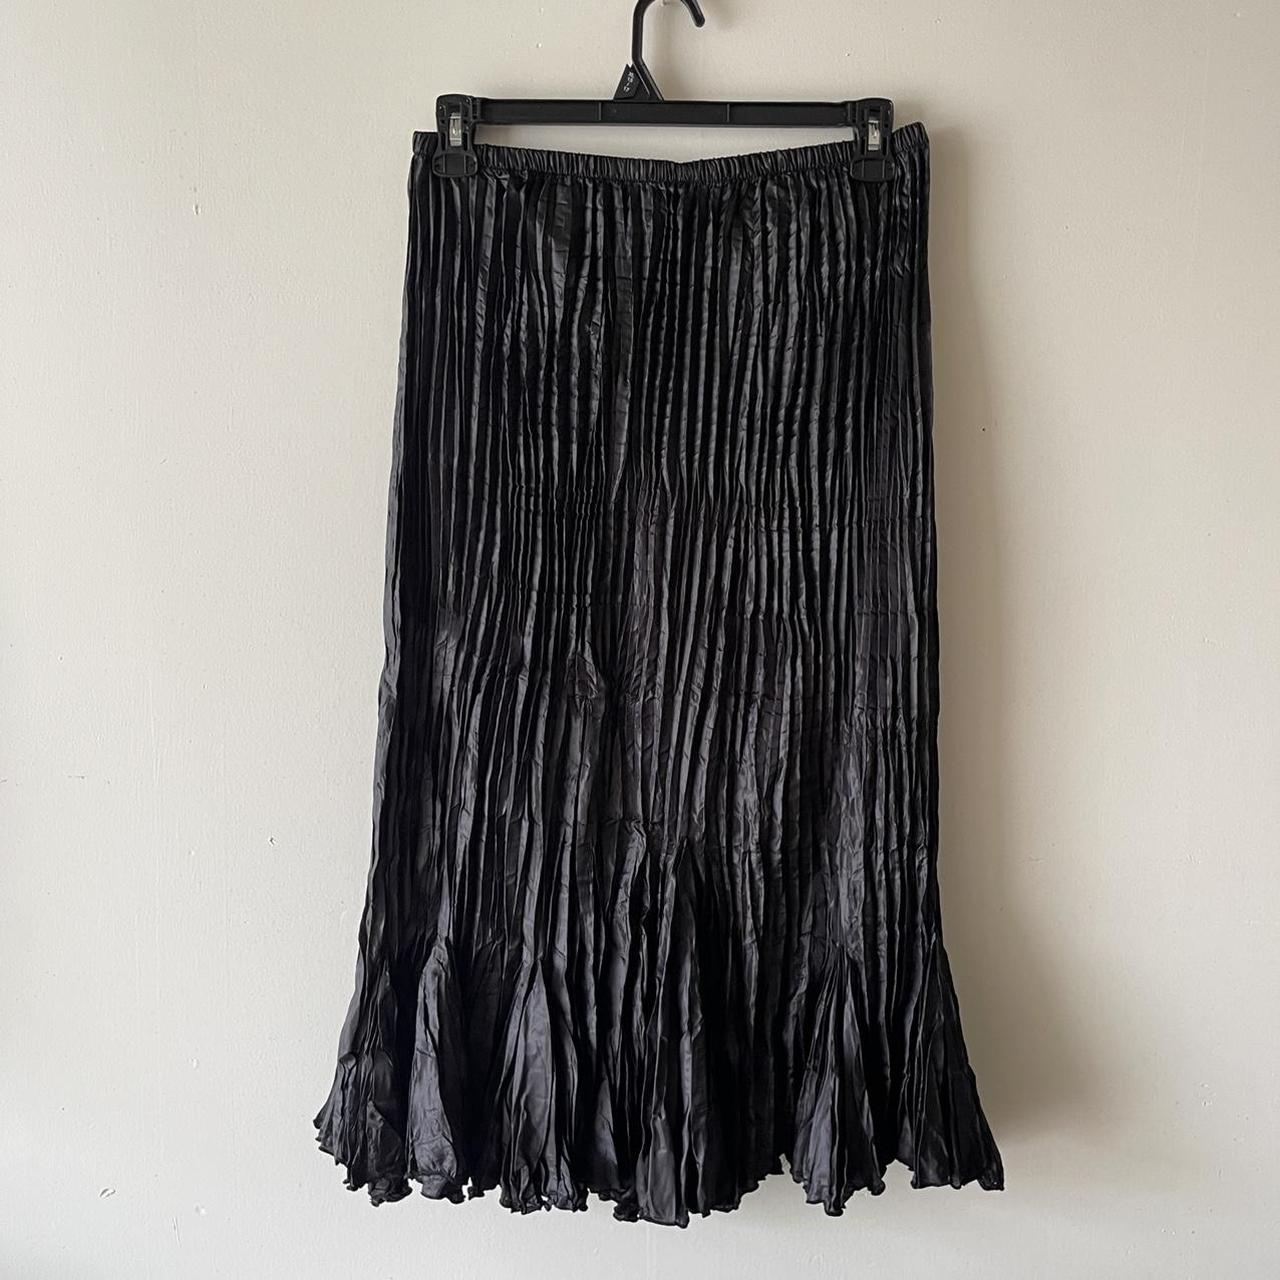 Zashi Women's Black Skirt (3)